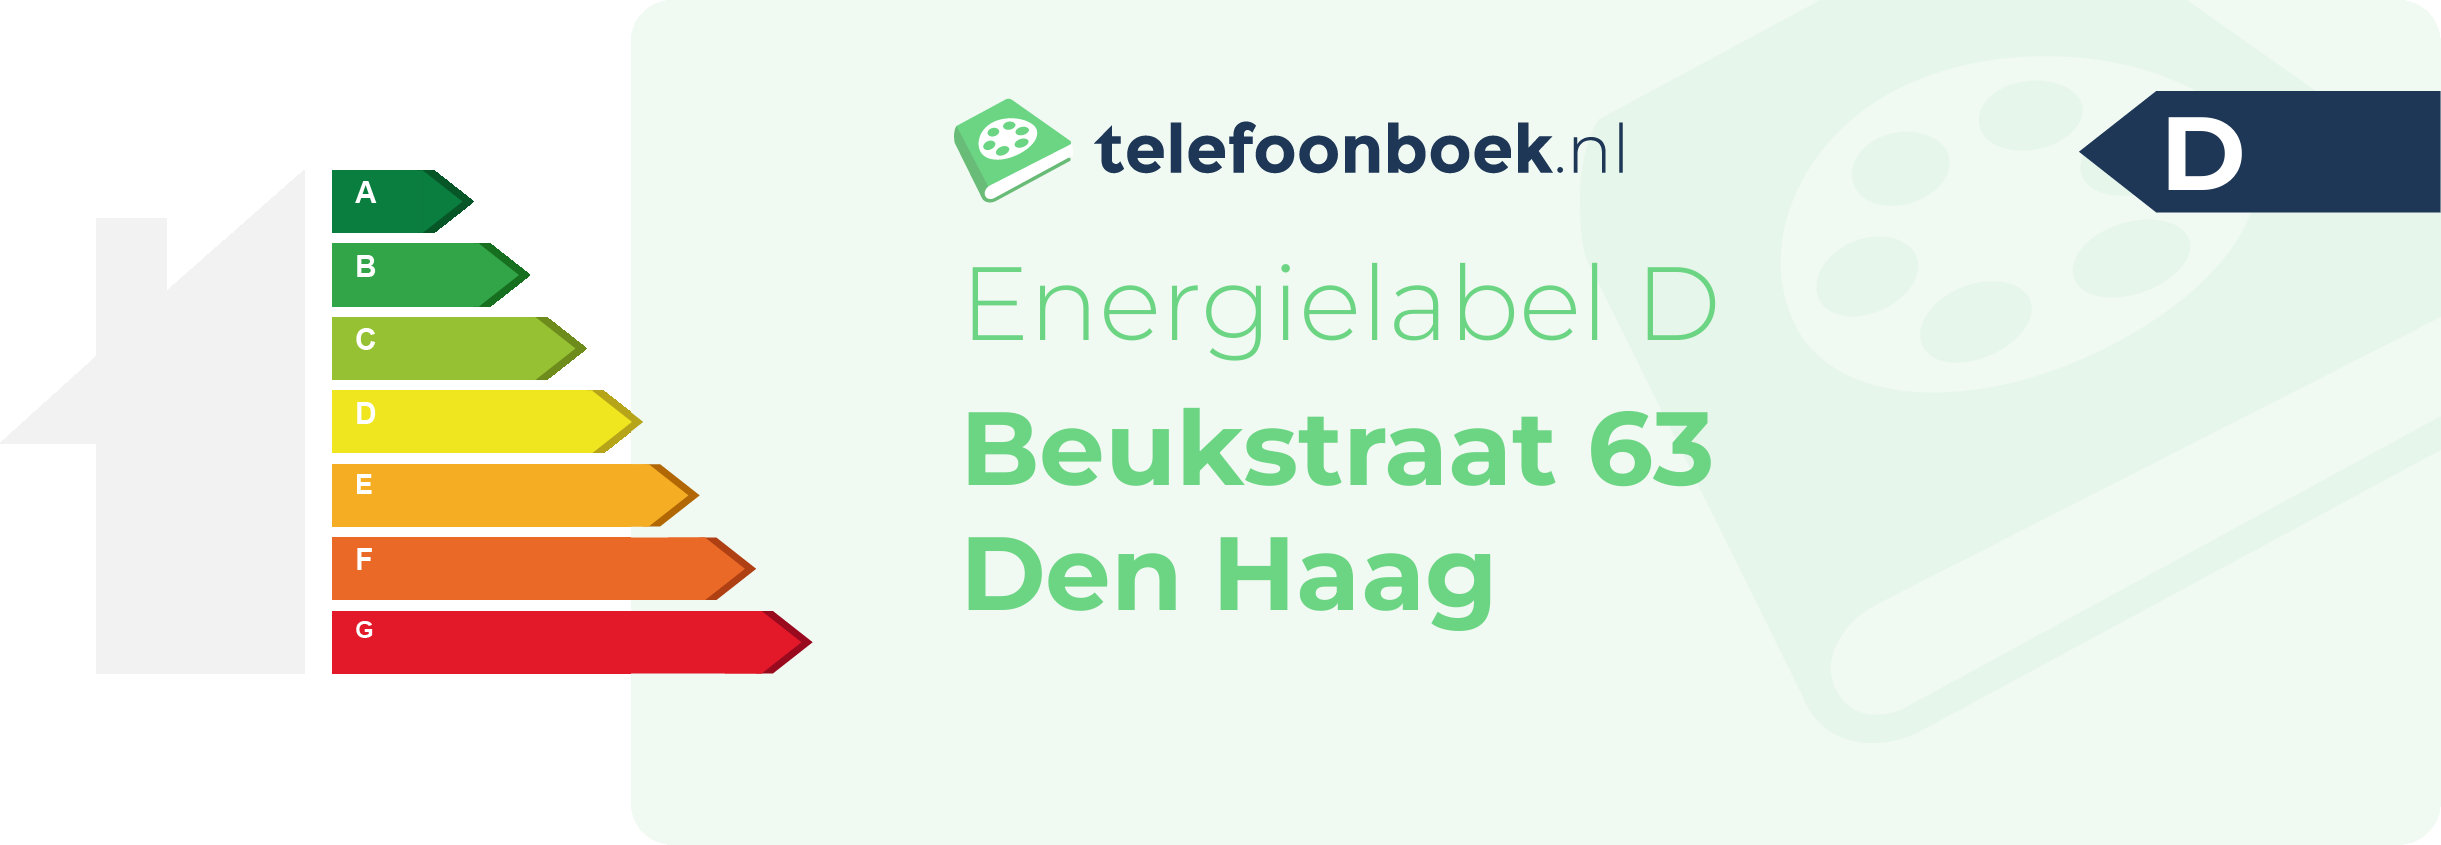 Energielabel Beukstraat 63 Den Haag